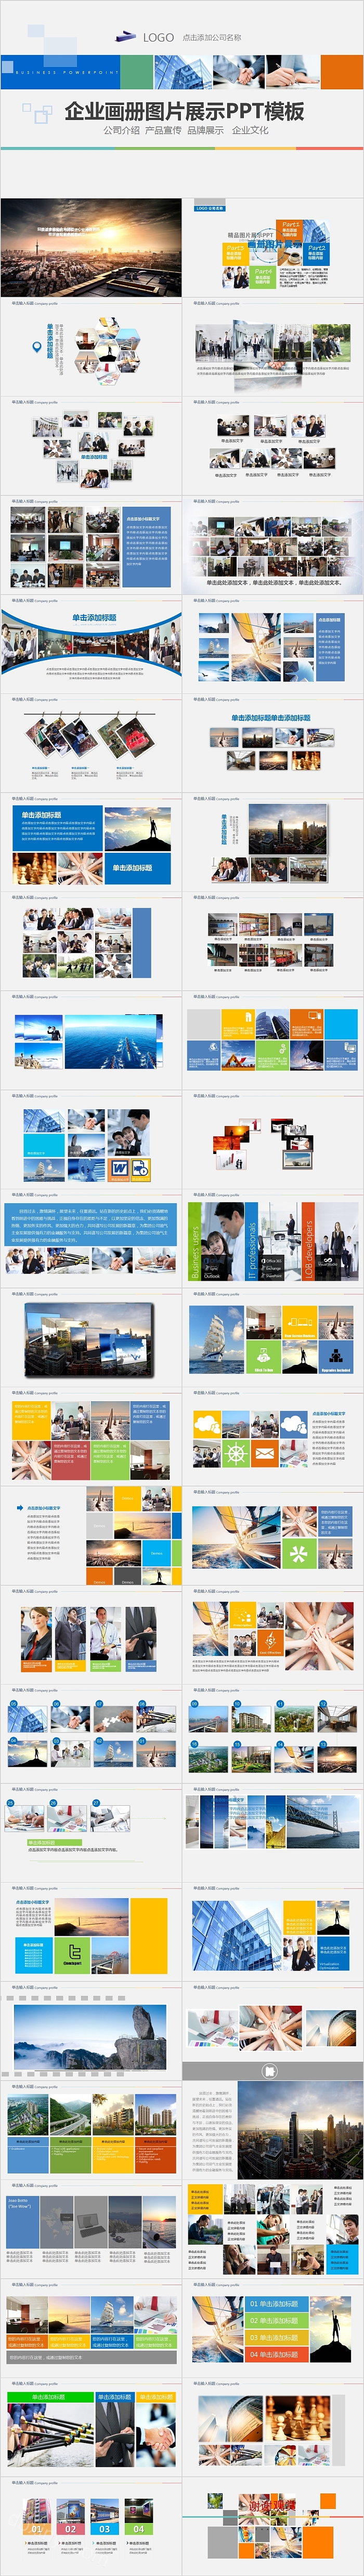 公司介绍产品宣传企业画册图片展示PPT模板